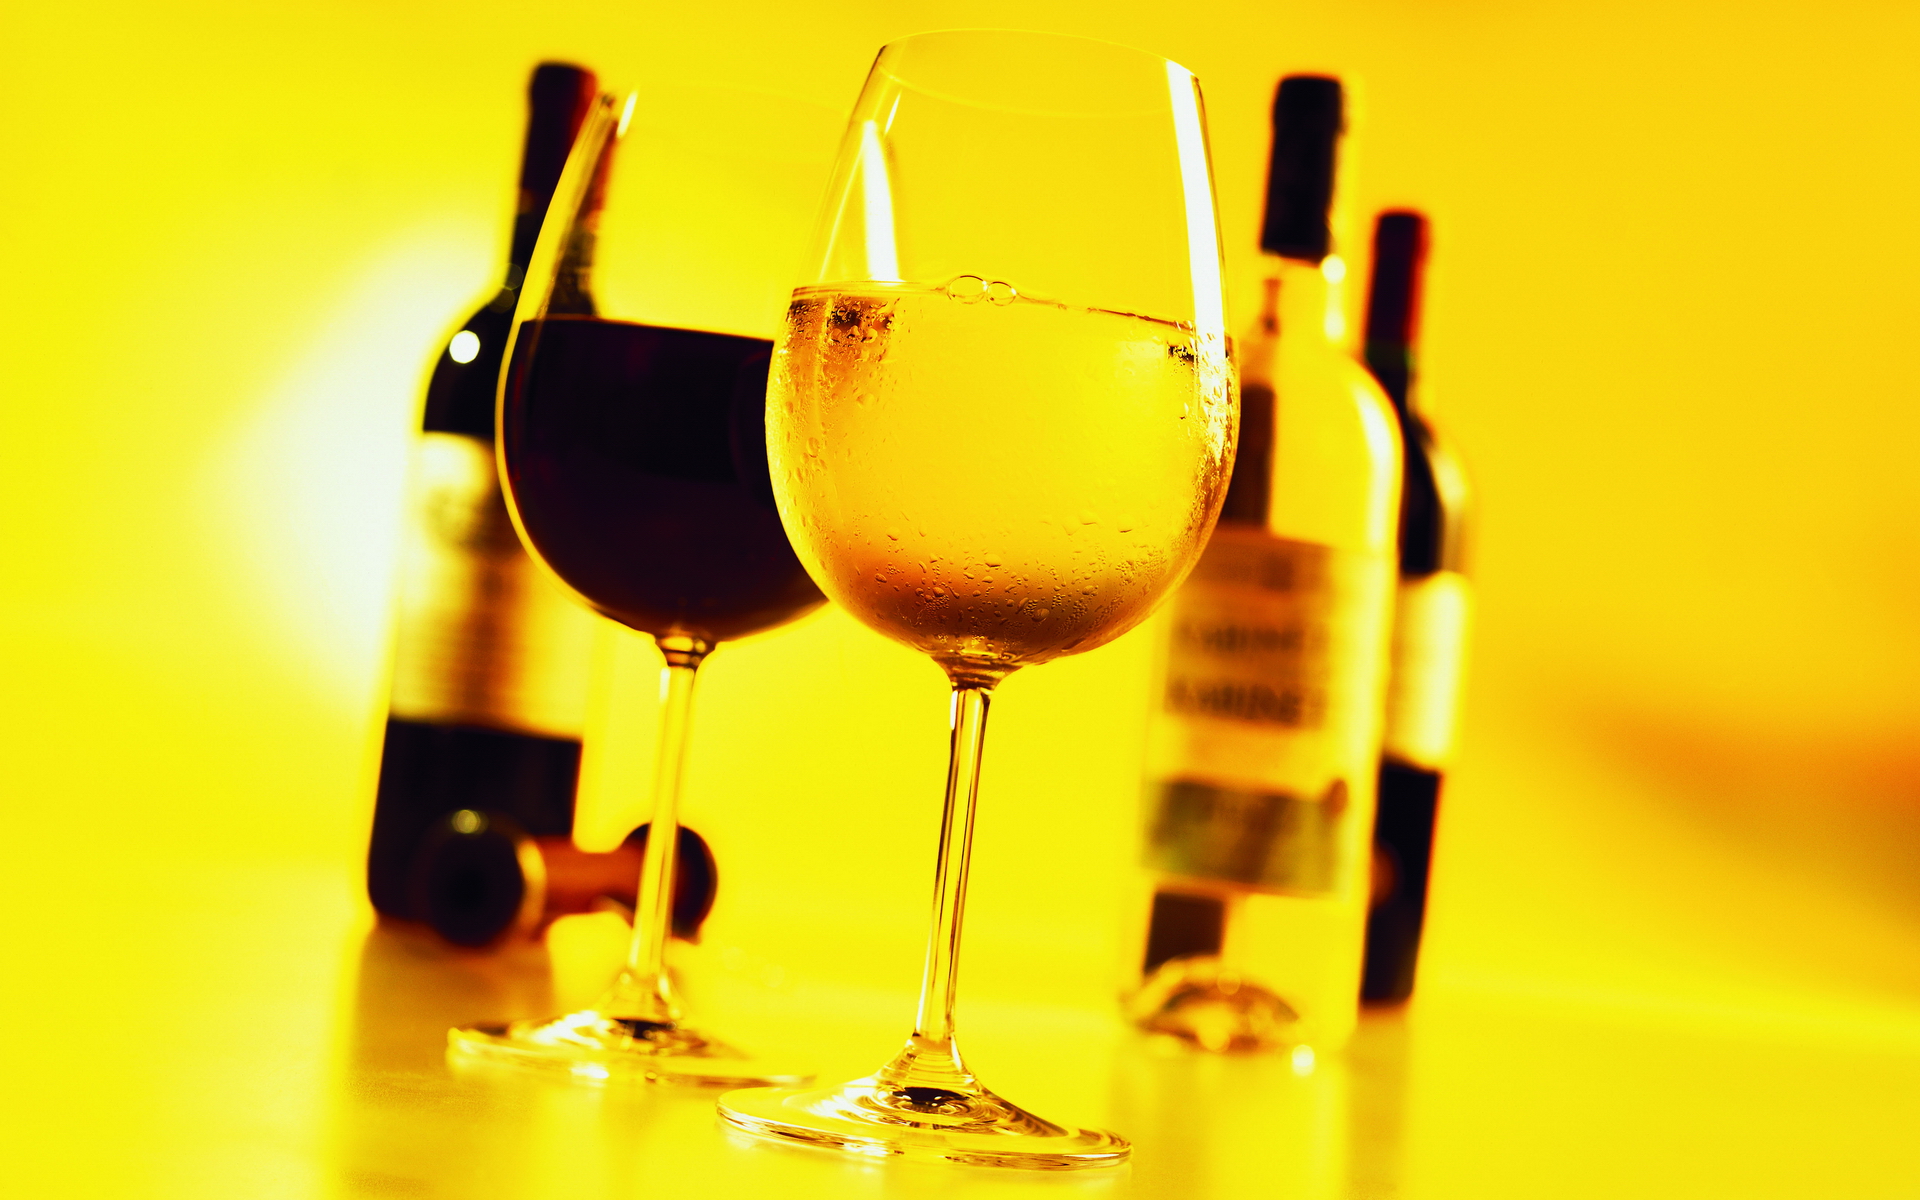 Rețete de supraviețuire sau cum corect să consumăm băuturile alcoolice